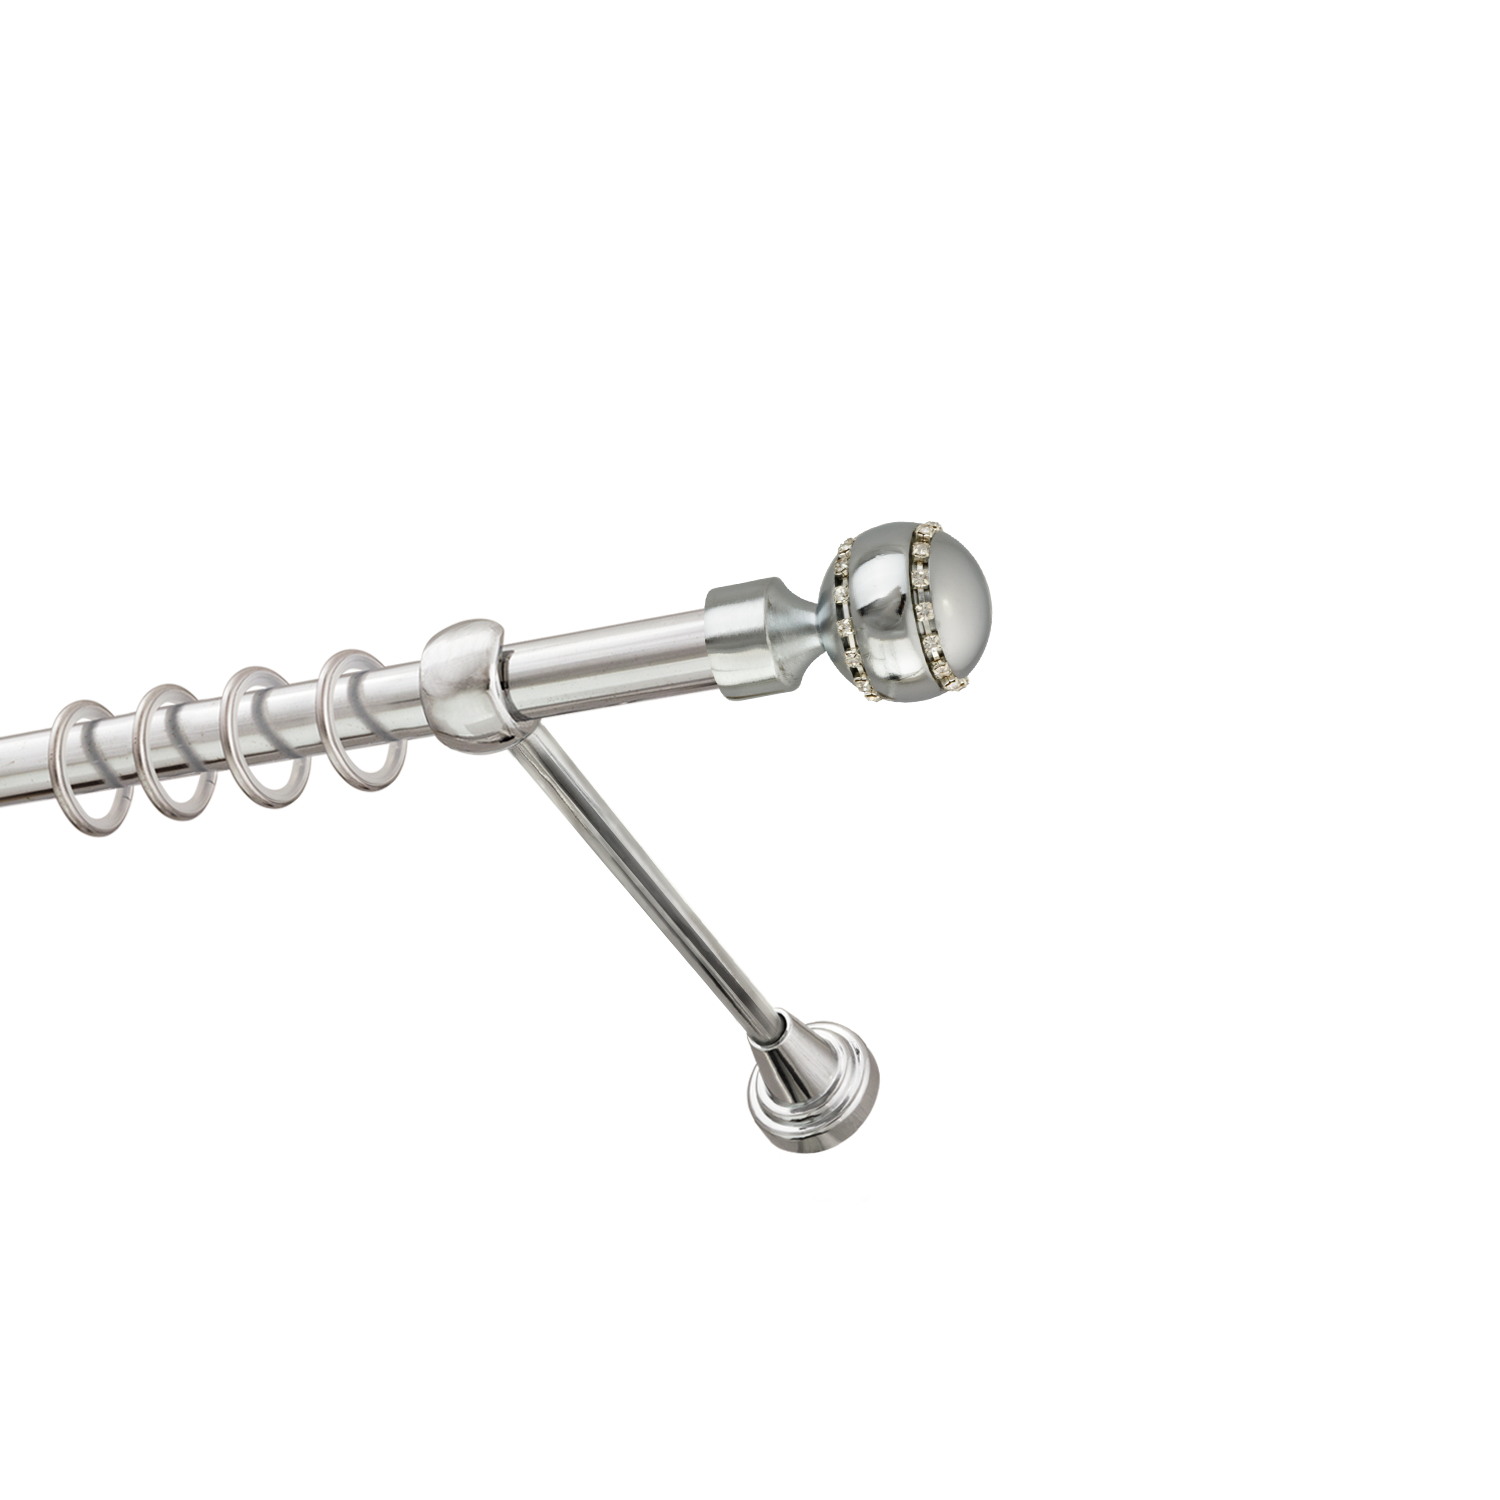 Металлический карниз для штор Модерн, однорядный 16 мм, серебро, гладкая штанга, длина 140 см - фото Wikidecor.ru